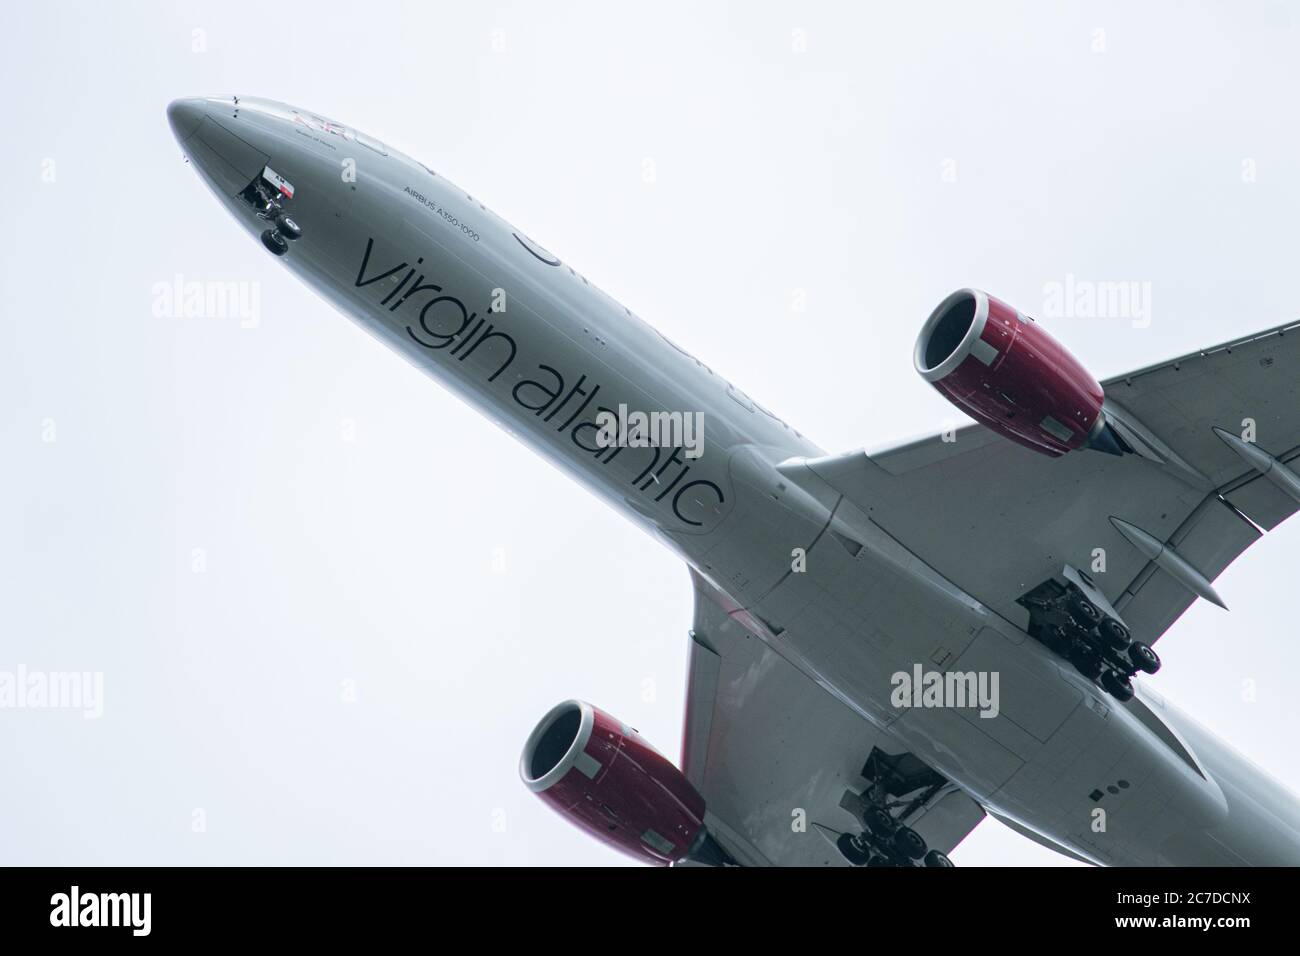 LONDON, GROSSBRITANNIEN. Juli 2020. Die Unterfahrbahn eines Virgin Atlantic Airliners, das sich auf die Landung am Flughafen Heathrow vorbereitet. Die Virgin Atlantic Gruppe von Sir Richard Branson hat sich einen £1,2 Mrd. finanziellen Rettungsvertrag gesichert, um Tausende von Arbeitsplätzen zu schützen, nachdem die Passagierzahlen mit Ländern, die Reiseverbote verhängen, durch eine COVID-19-Coronavirus-Pandemie versankte. Kredit: amer ghazzal/Alamy Live Nachrichten Stockfoto